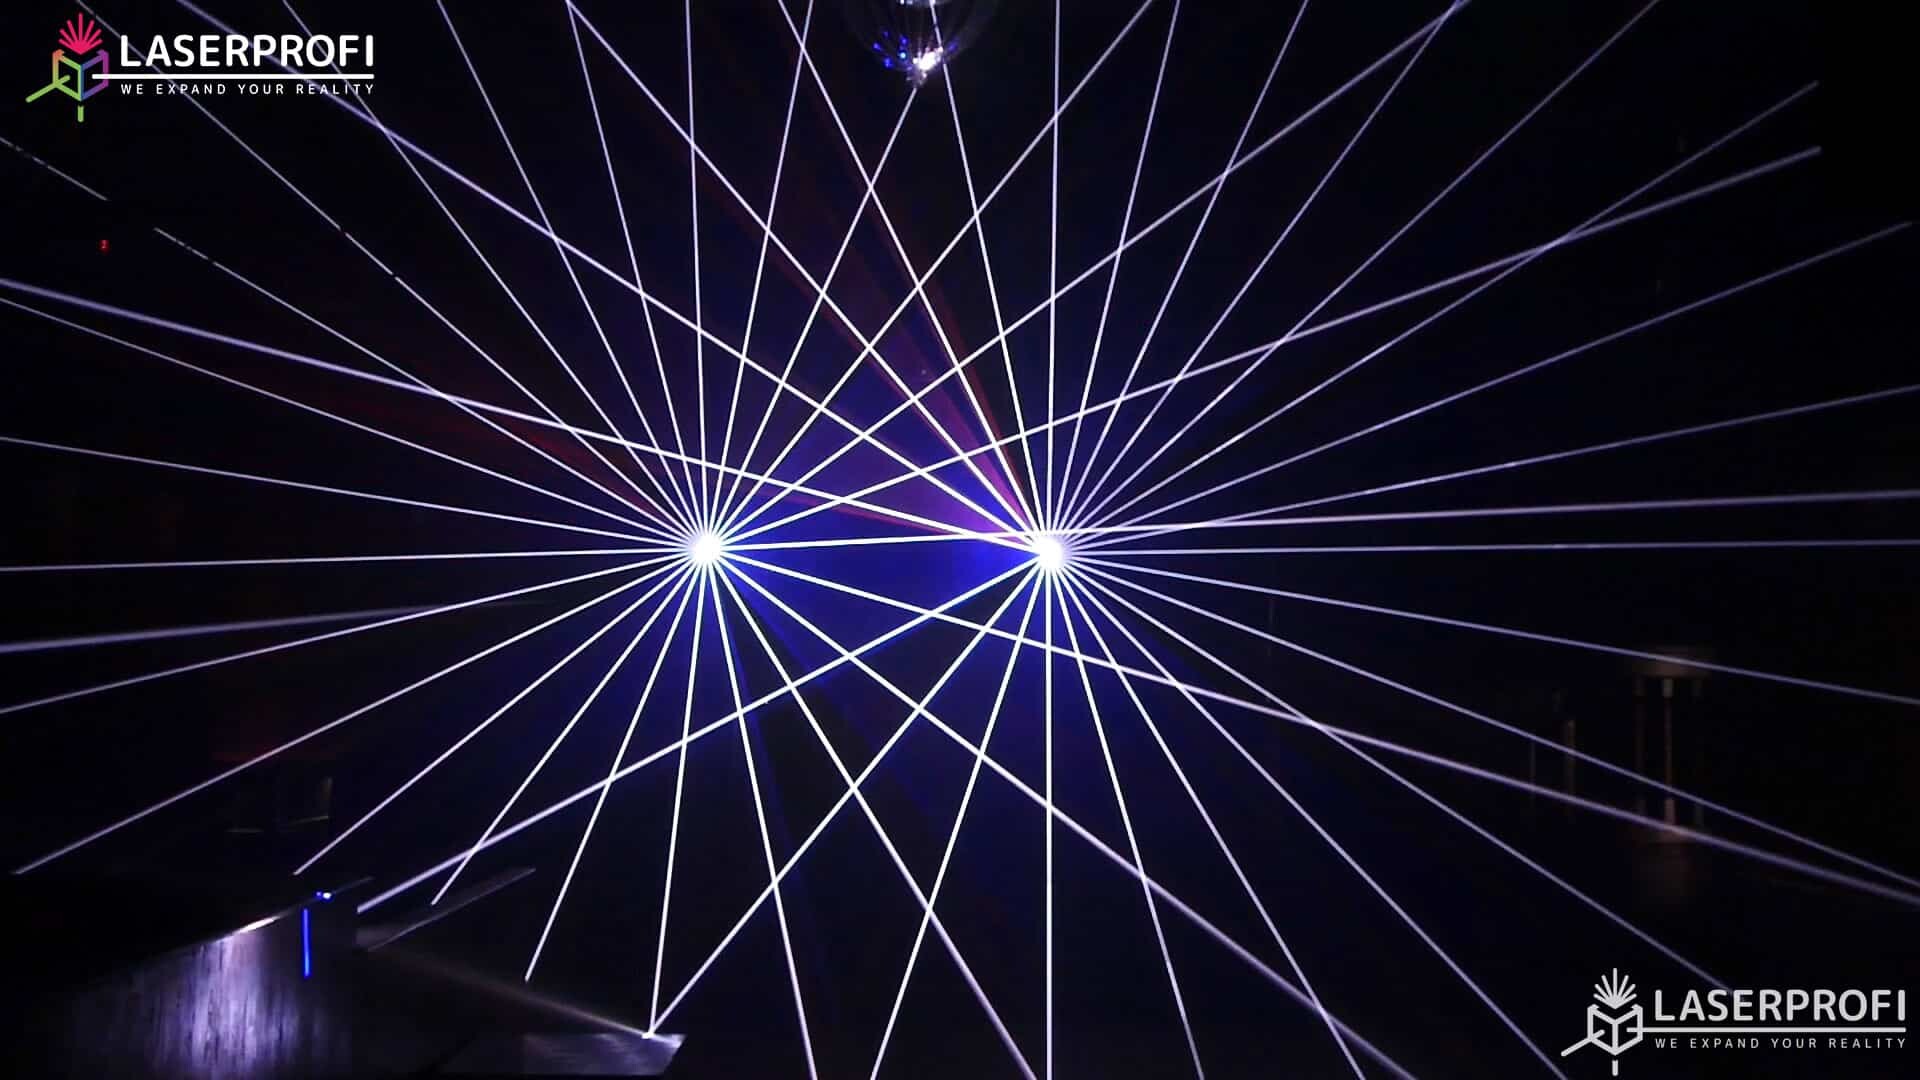 Przestrzenny pokaz laserowy wachlarz laserowy